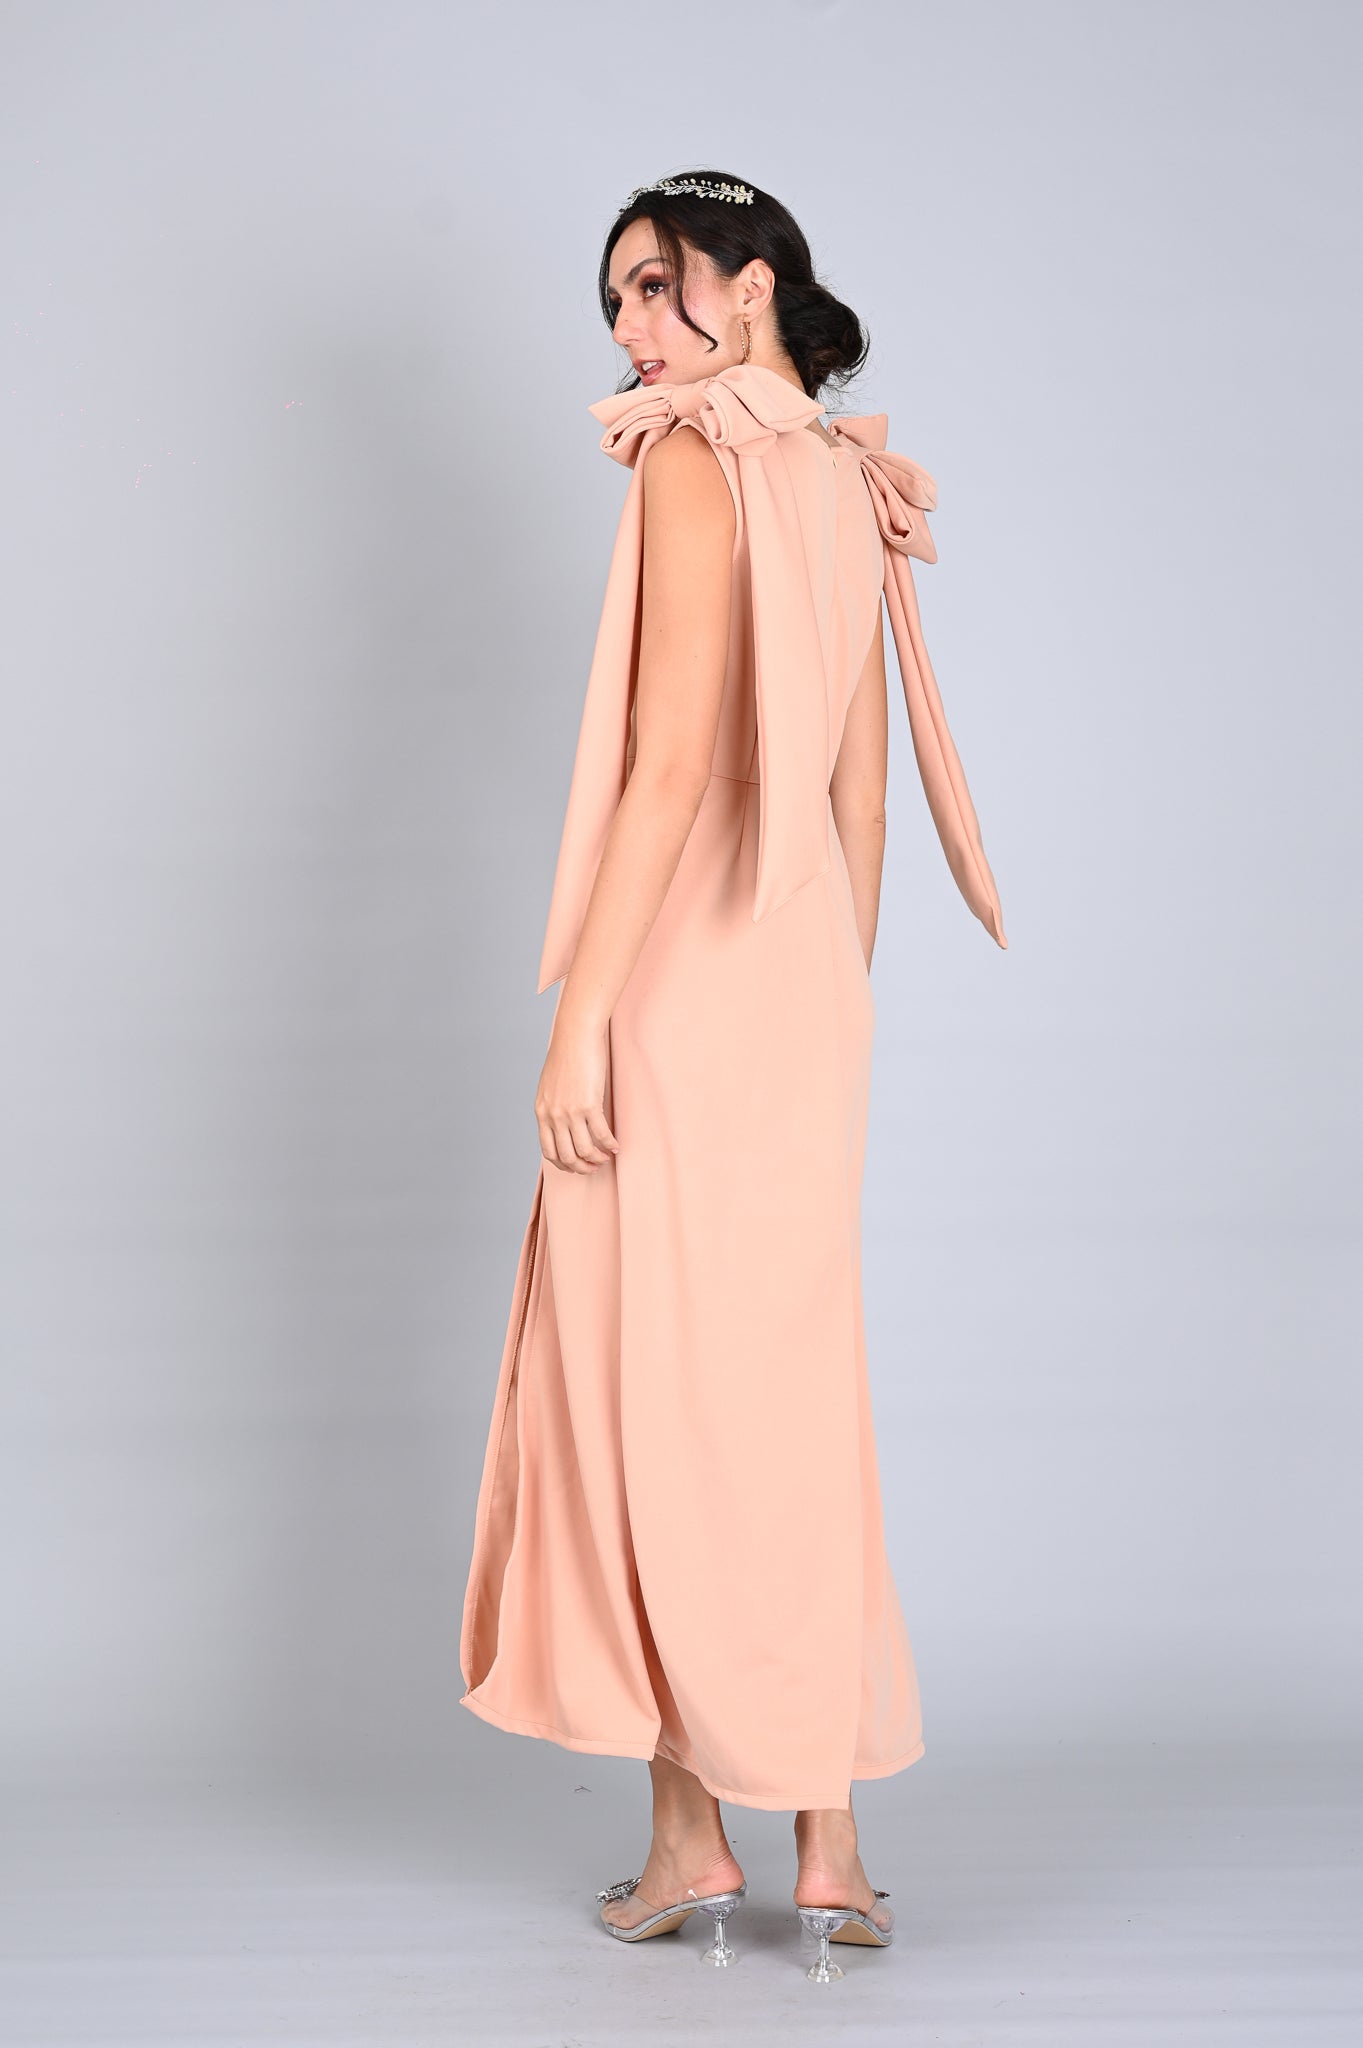 Gowns 2: Savannah